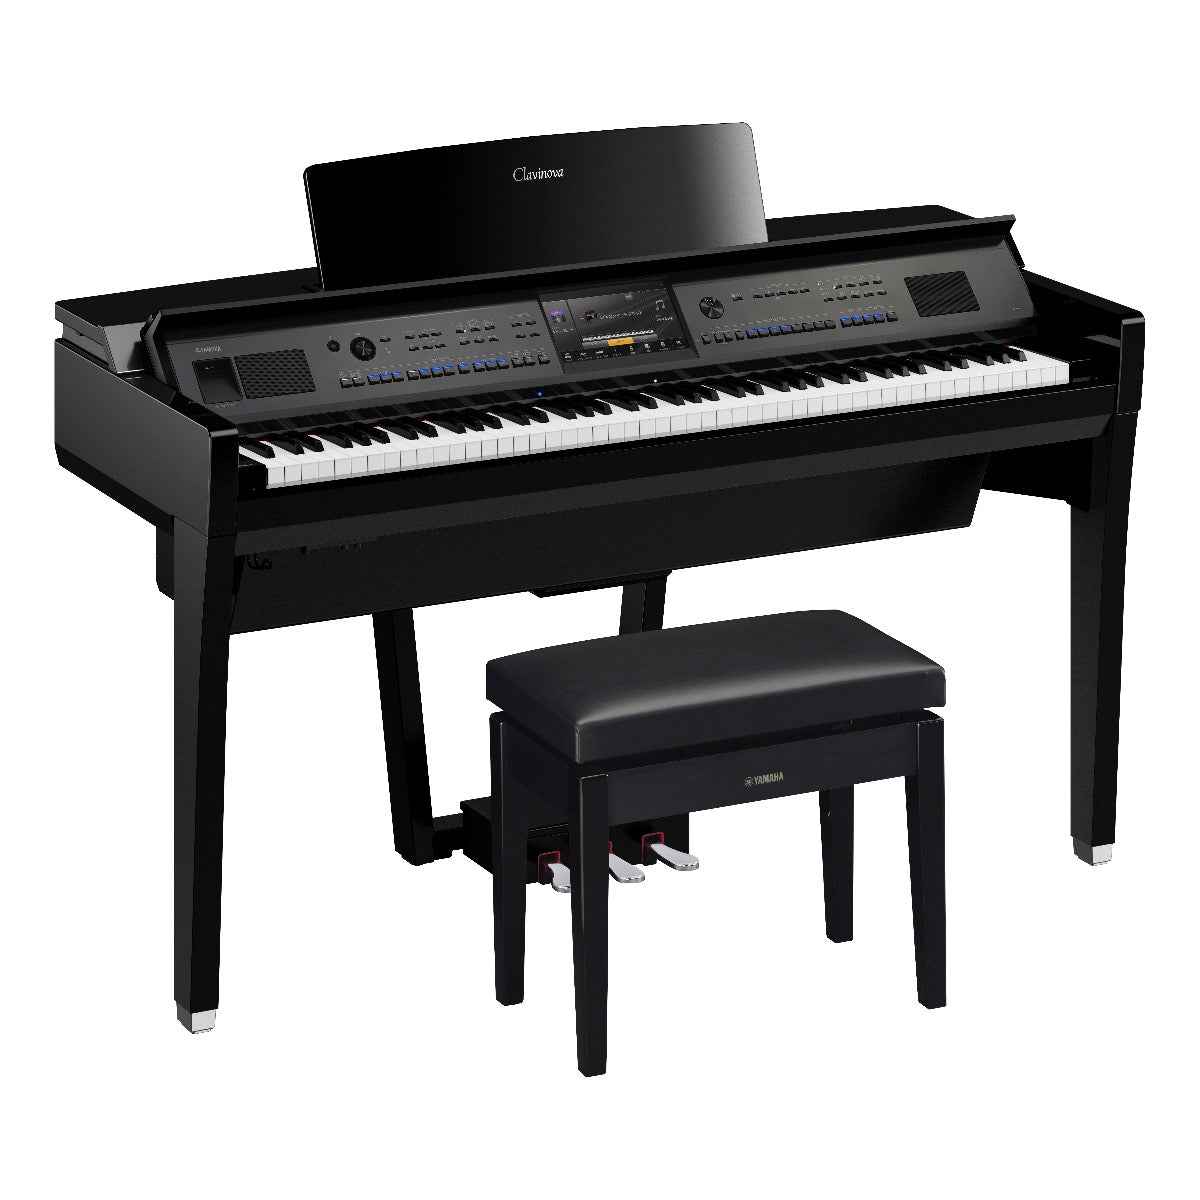 Yamaha Clavinova CVP-909 Digital Piano - Polished Ebony - Right angle with bench